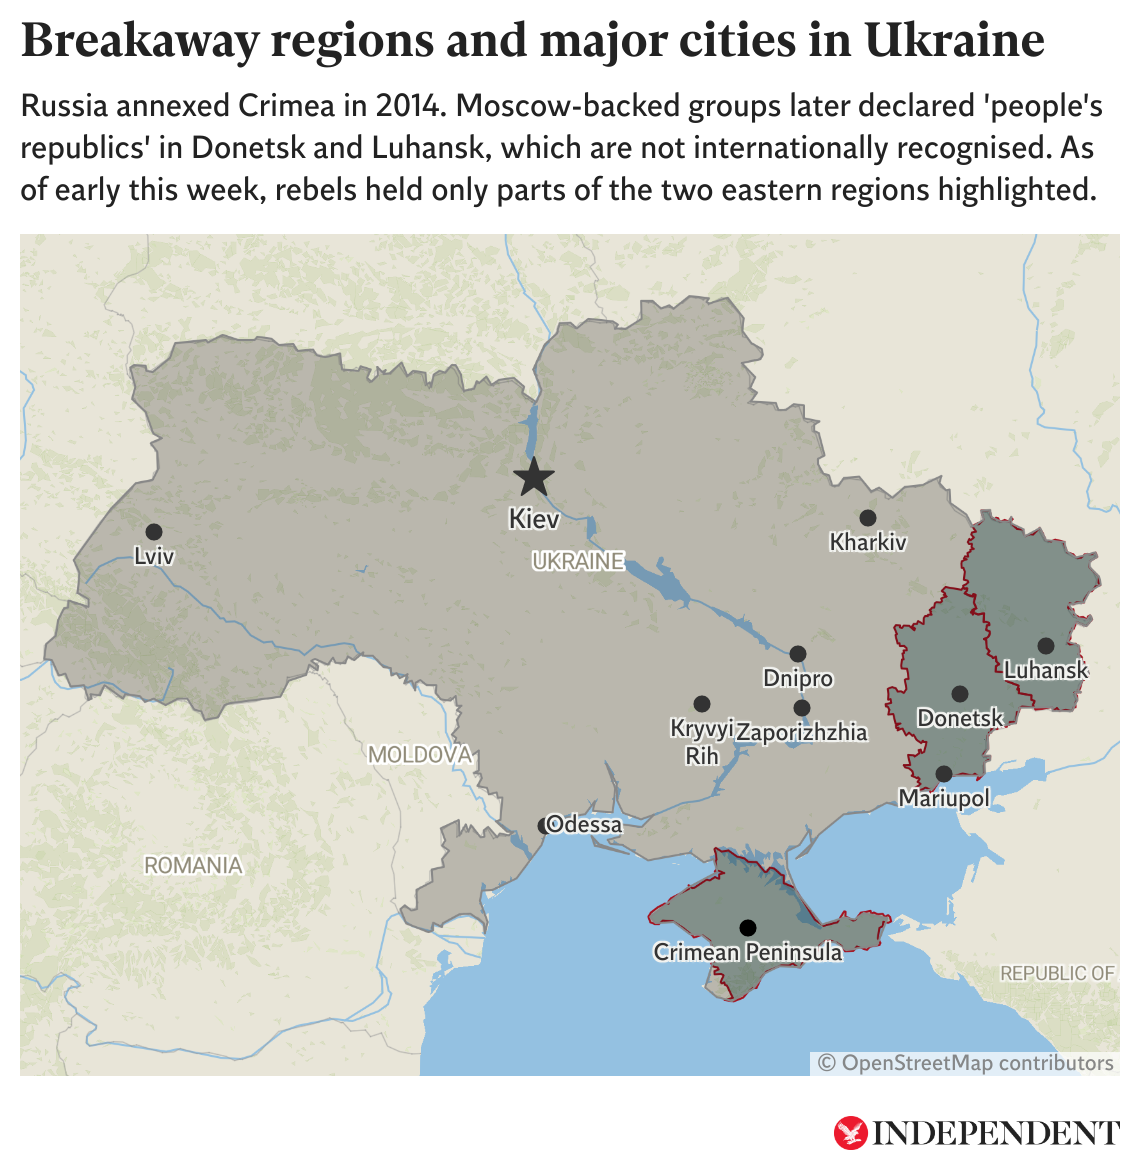 Este mapa muestra las principales ciudades de Ucrania, así como las regiones separatistas respaldadas por Moscú. A inicios de este semana, rebeldes retuvieron partes de las regiones de Donetsk y Luhansk, resaltadas